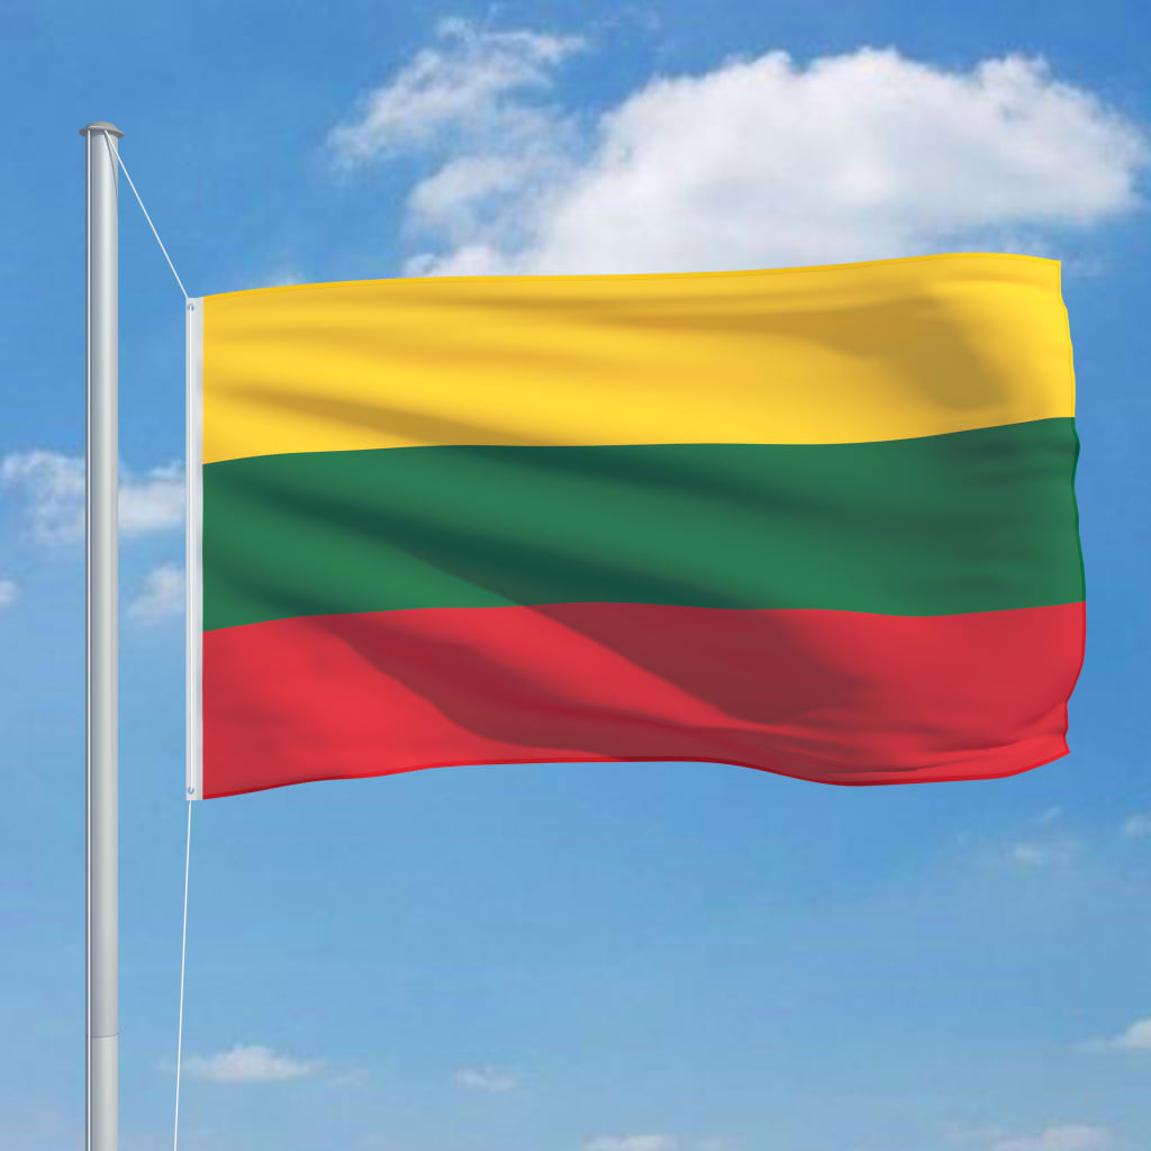 Litvanija ograničila tranzit ka Kaljingradu